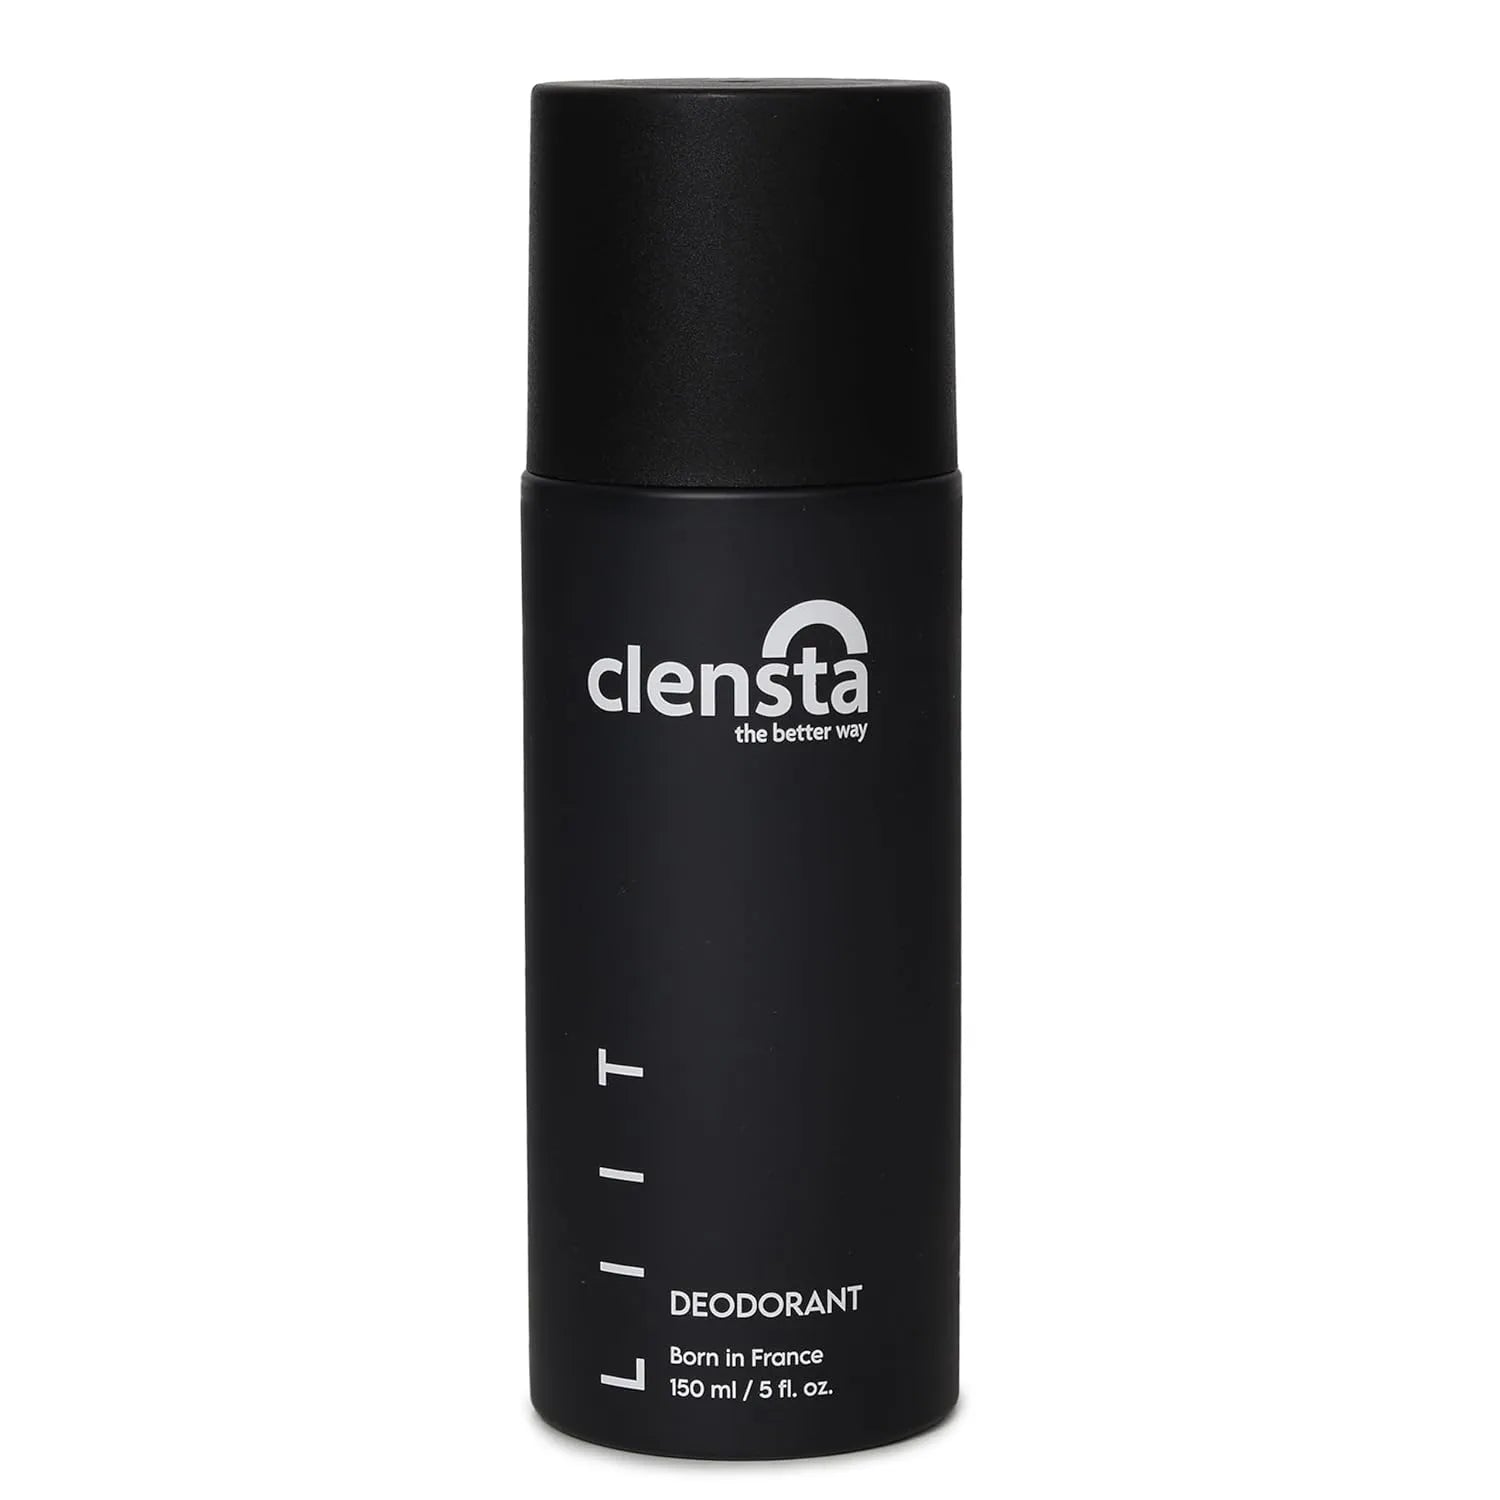 Clensta LIIT Deodorant 150ml - All-Day Freshness for Men & Women